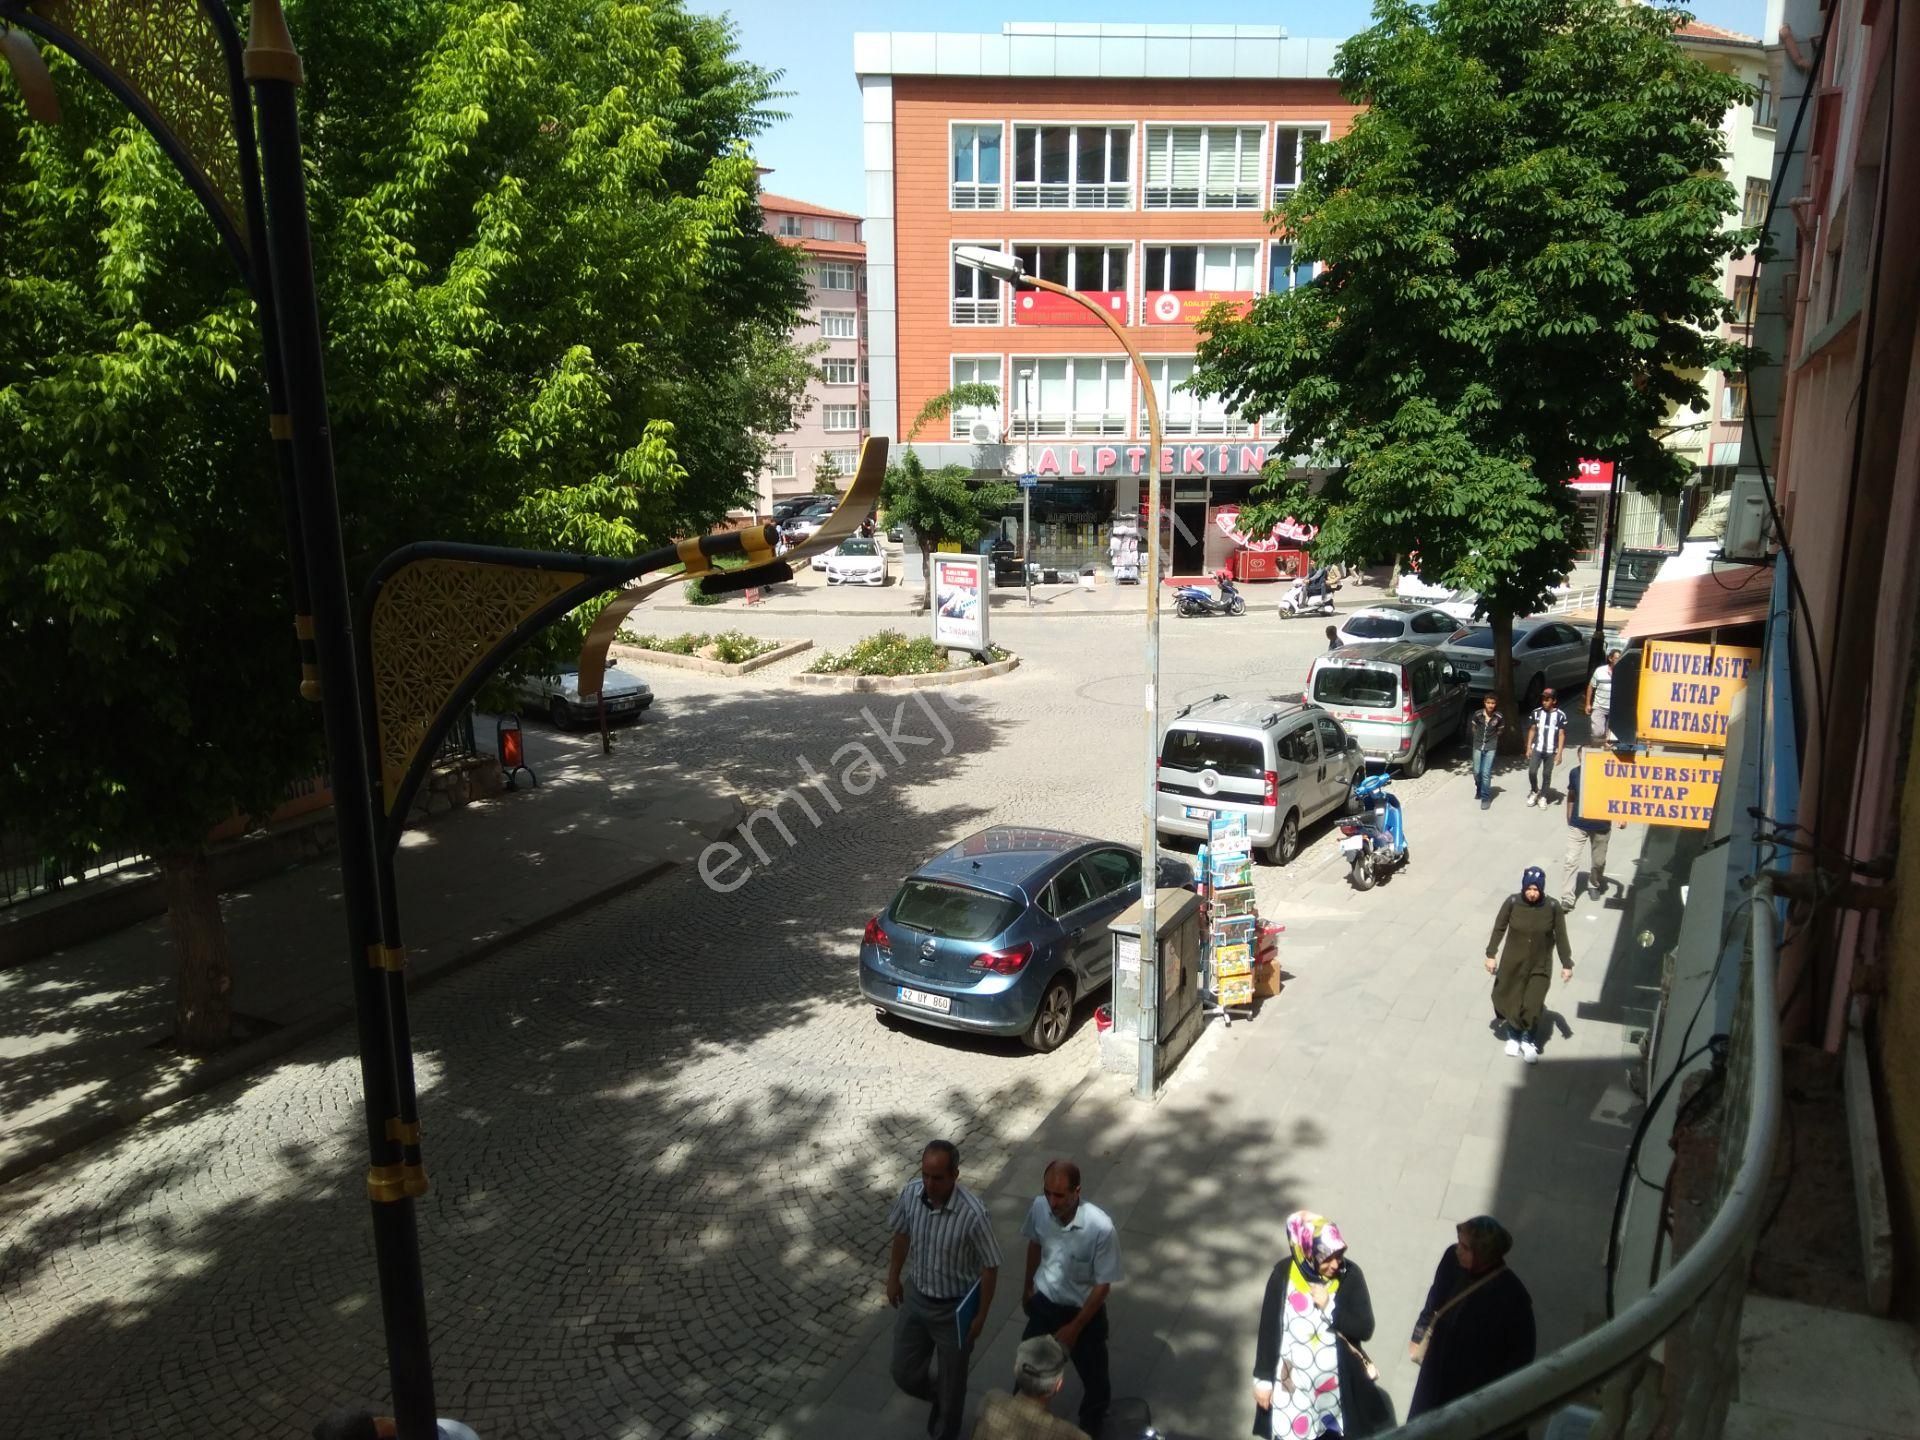 Akşehir Meydan Satılık Dükkan & Mağaza  AKŞEHİR DEMİRHAN EMLAKTAN SATILIK  İŞYER